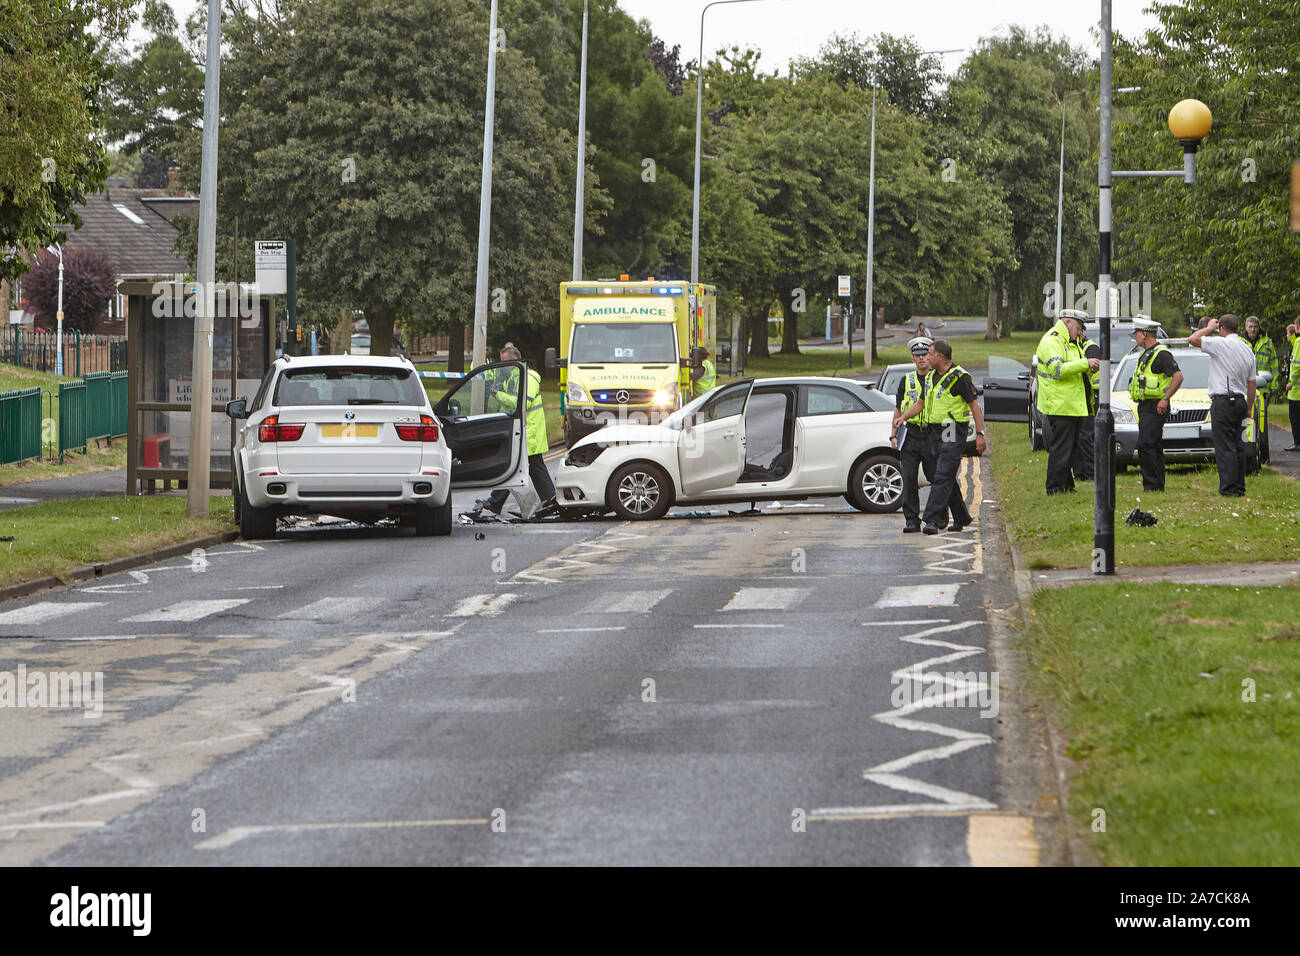 El 28 de julio de 2016 - Los servicios de emergencia asisten a un grave accidente de tráfico, RTA, tras un accidente de coche en cabeza en el oeste de Hul, East Yorkshire, Reino Unido. Foto de stock